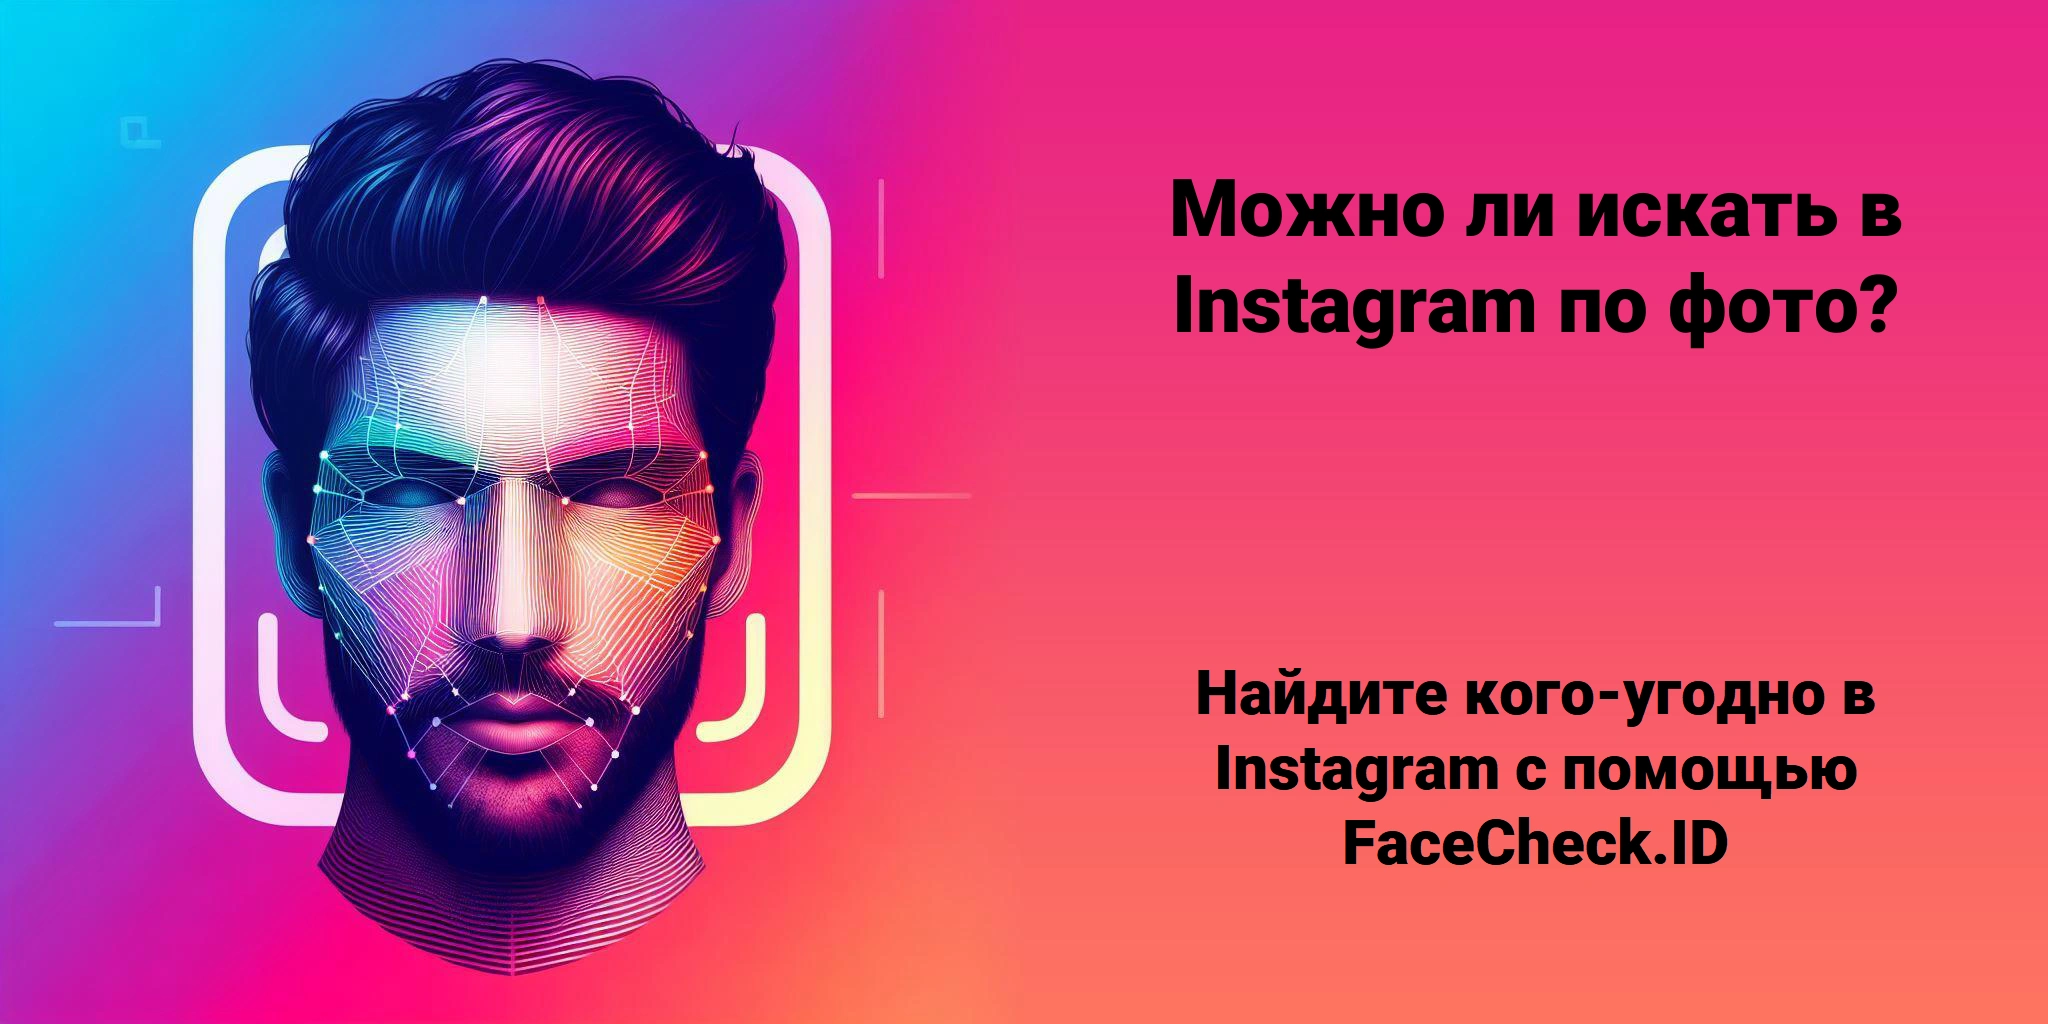 Можно ли искать в Instagram по фото? Найдите кого-угодно в Instagram с помощью FaceCheck.ID